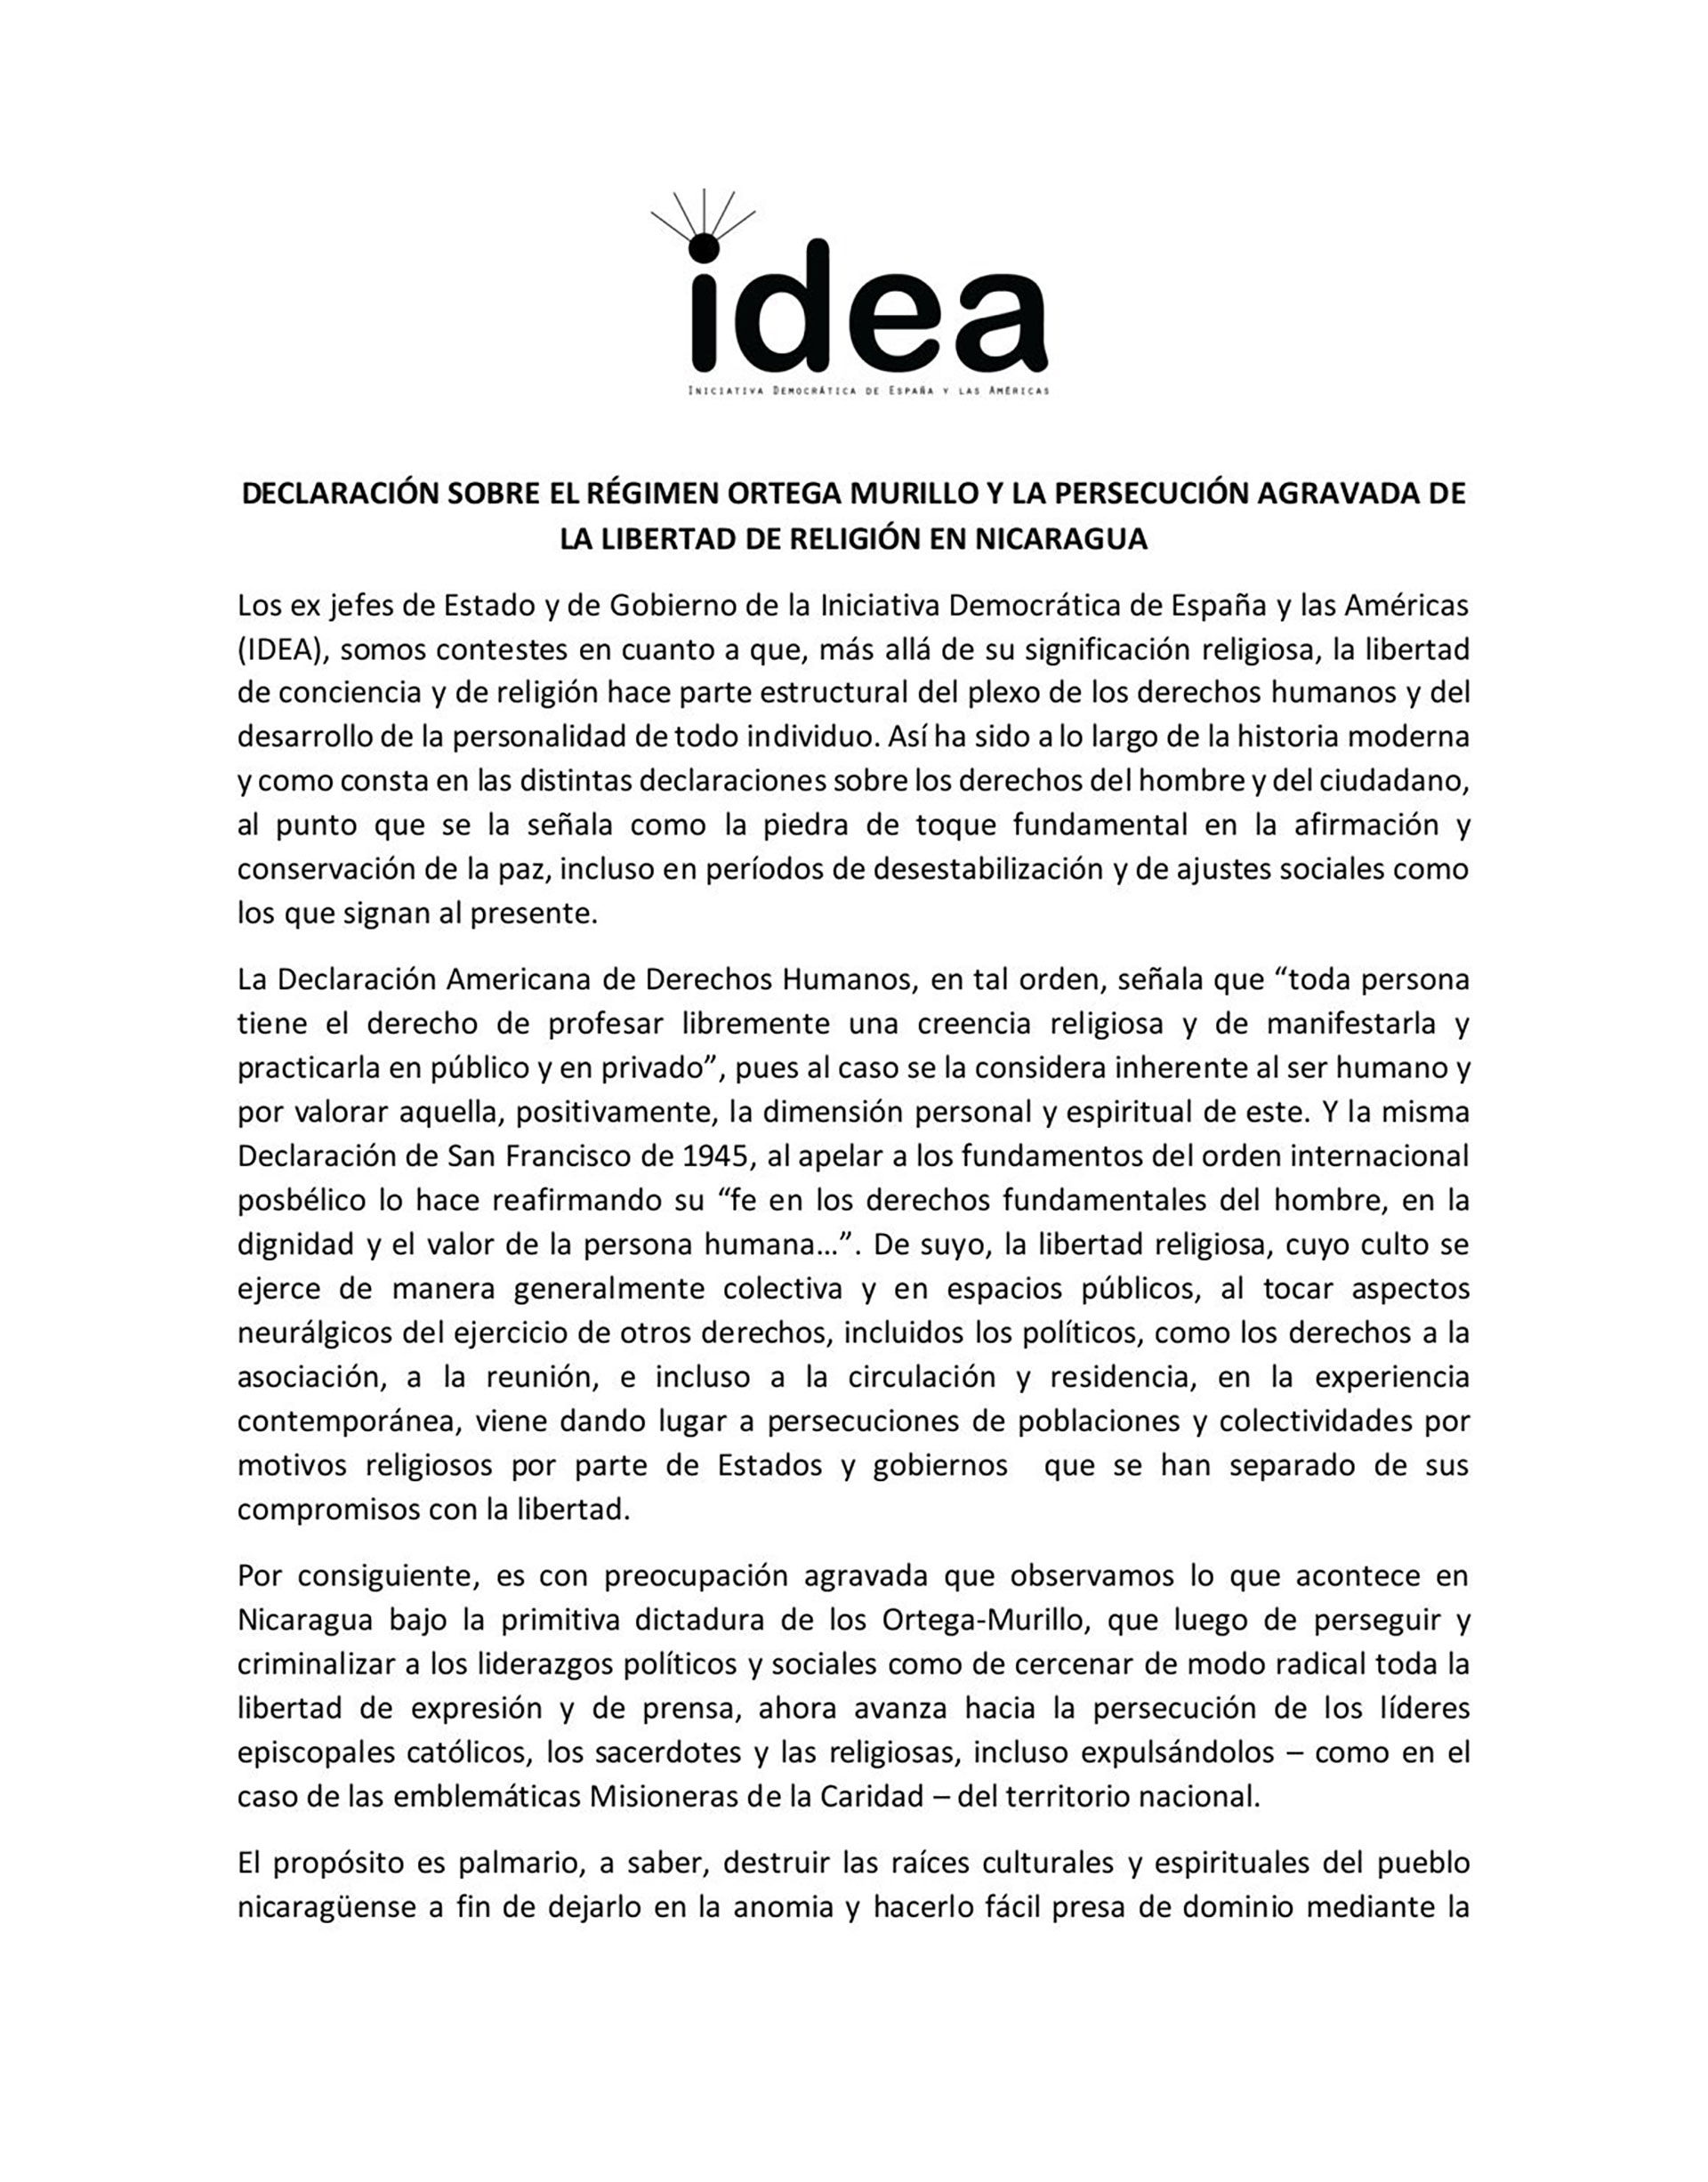 La primera parte de la declaración del grupo Idea sobre la persecución religiosa en Nicaragua 